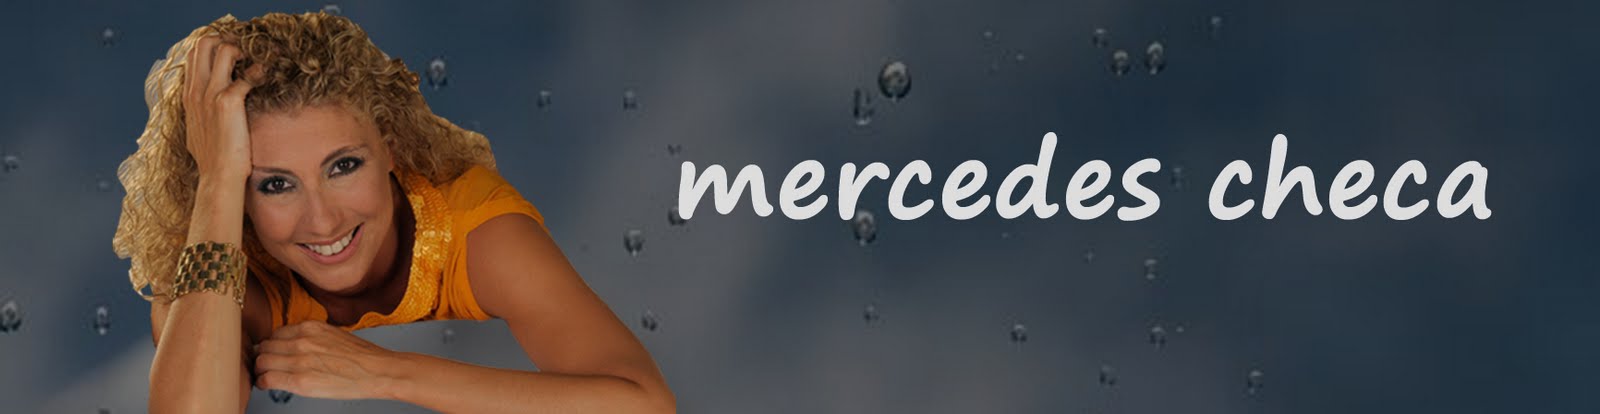 mercedescheca